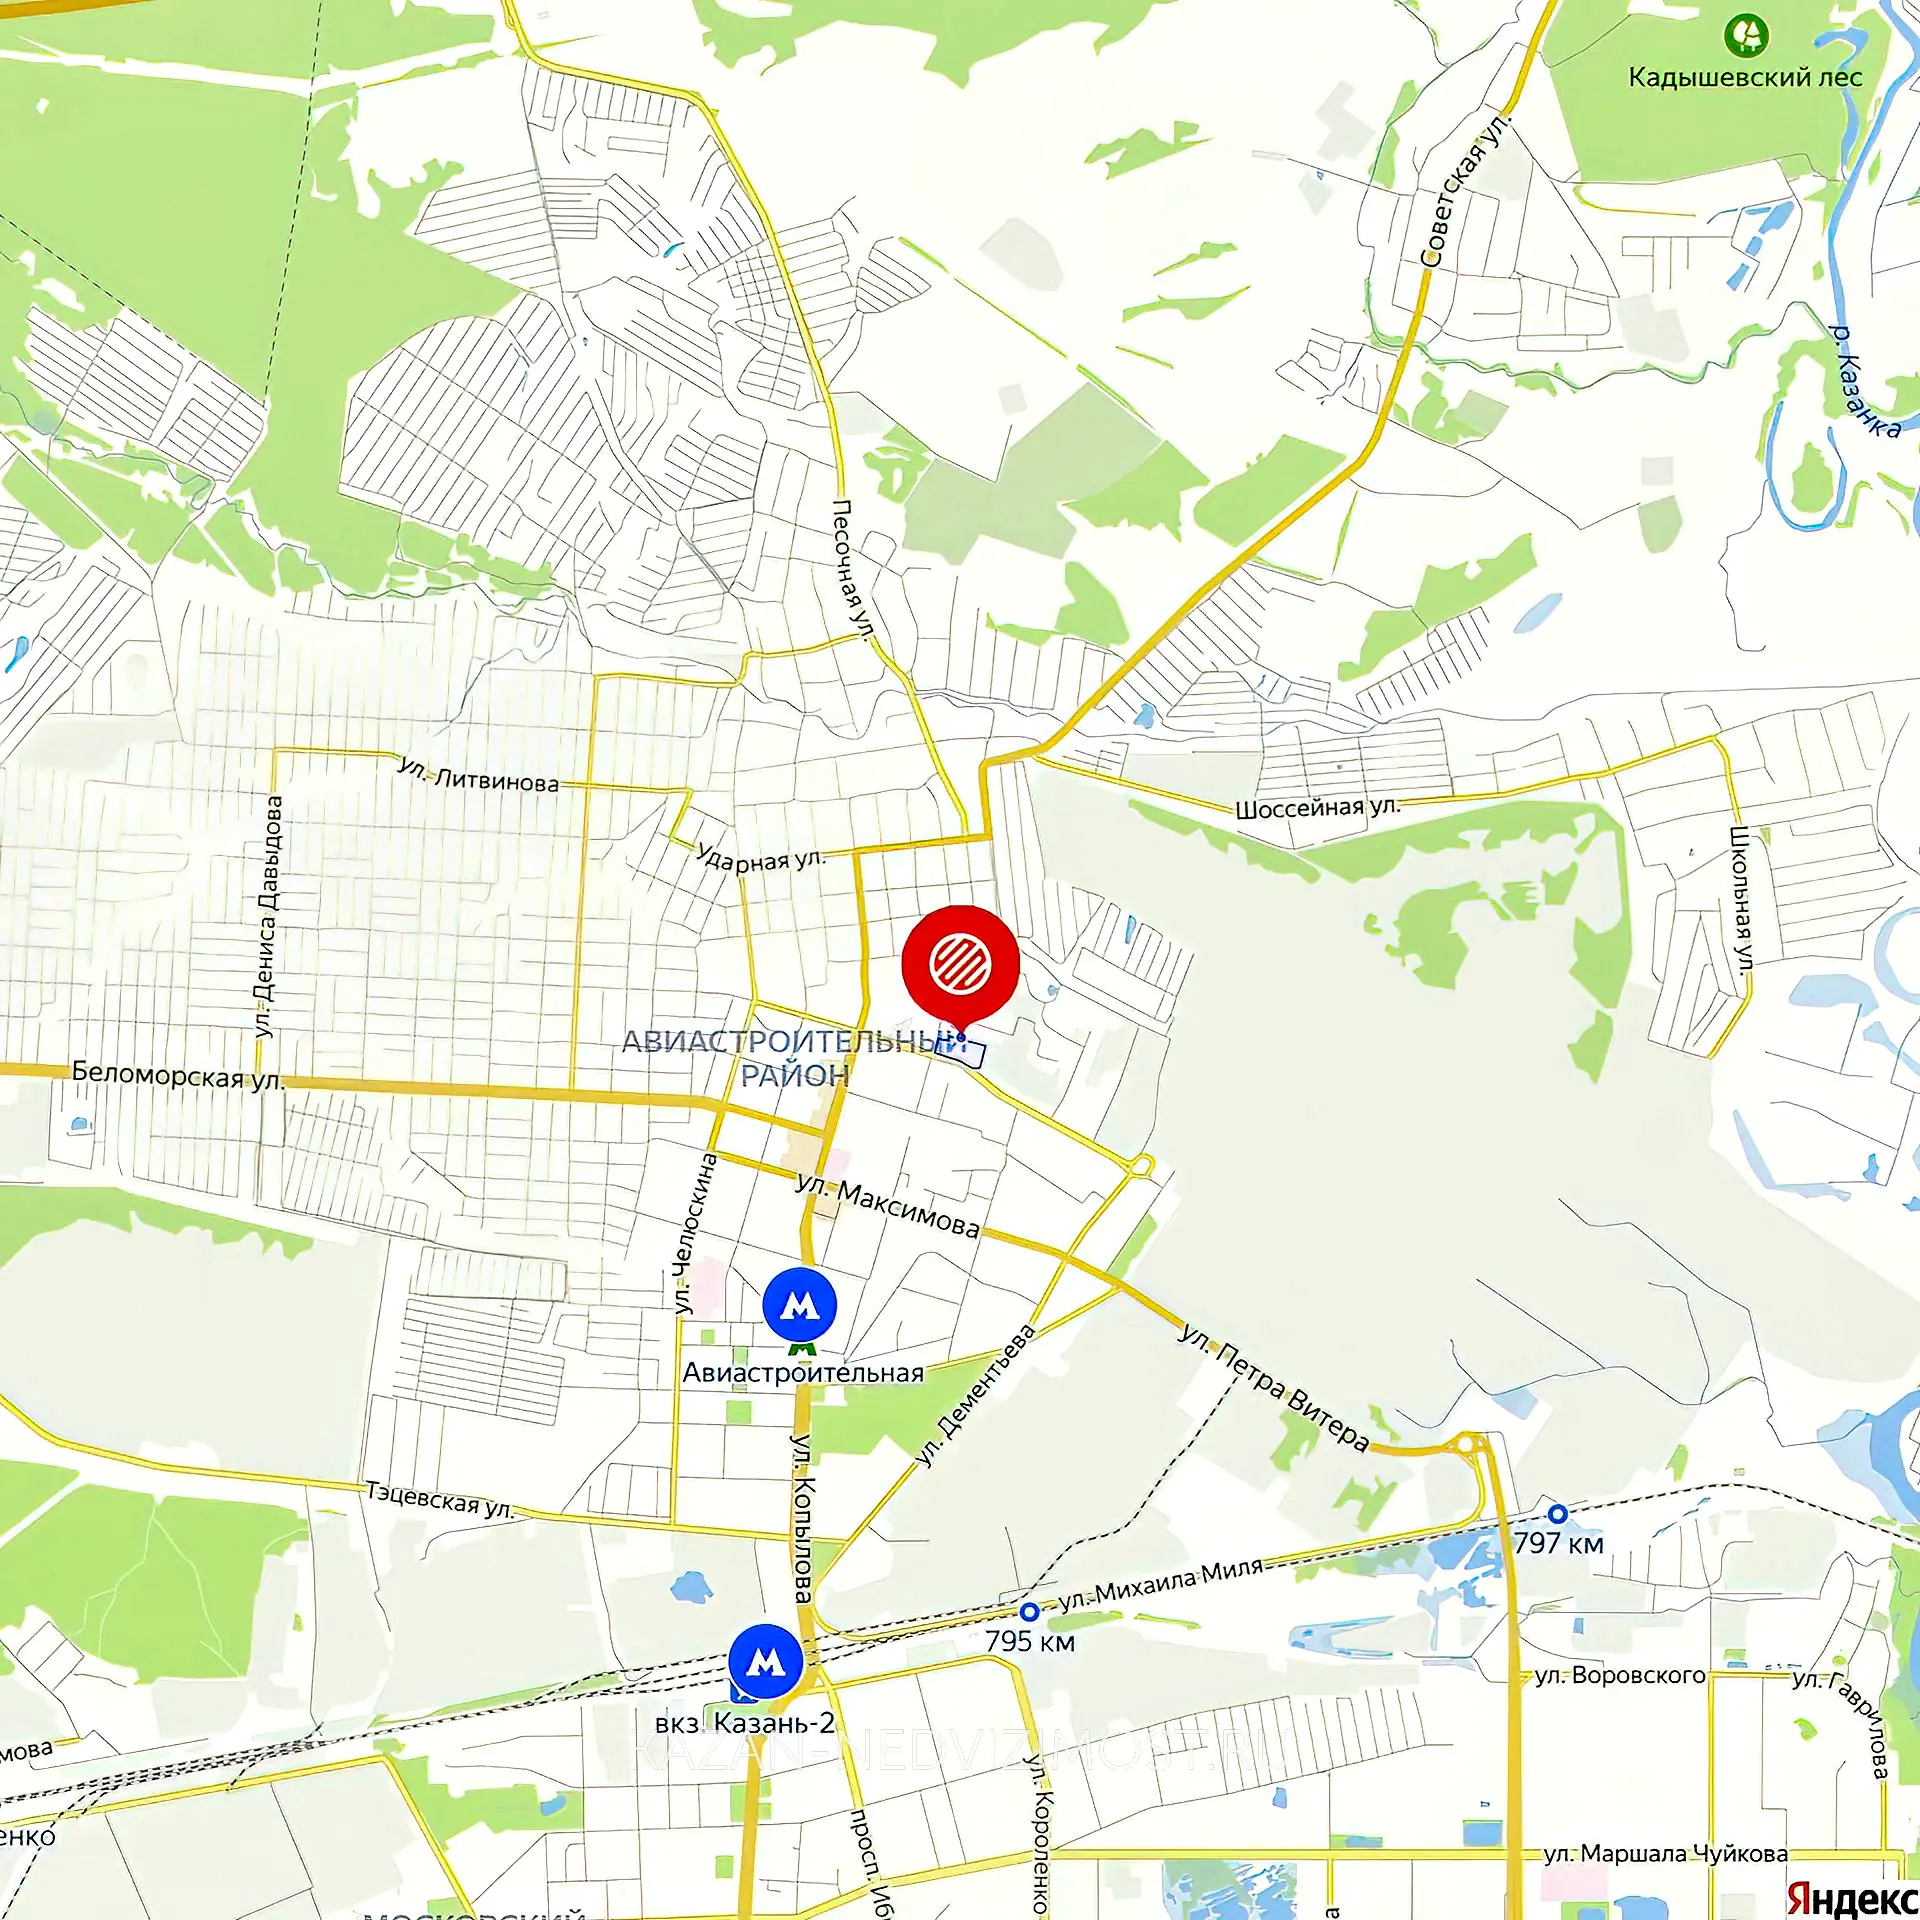 Расположение и маршрут на карте от ЖК Красное яблоко до центра города